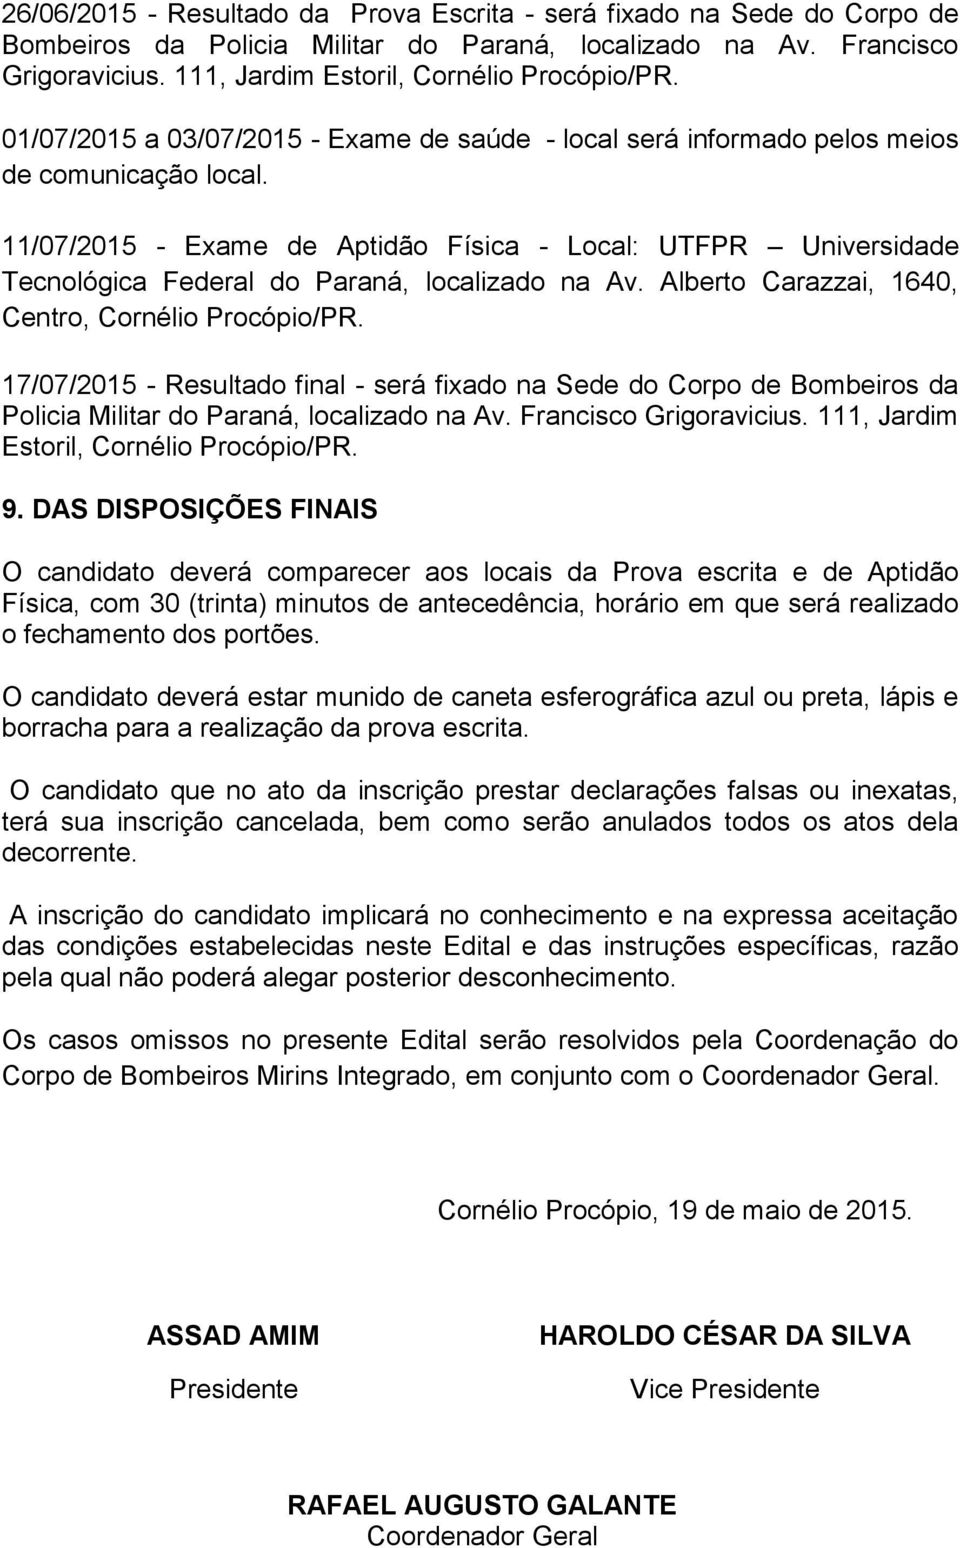 11/07/2015 - Exame de Aptidão Física - Local: UTFPR Universidade Tecnológica Federal do Paraná, localizado na Av. Alberto Carazzai, 1640, Centro, Cornélio Procópio/PR.